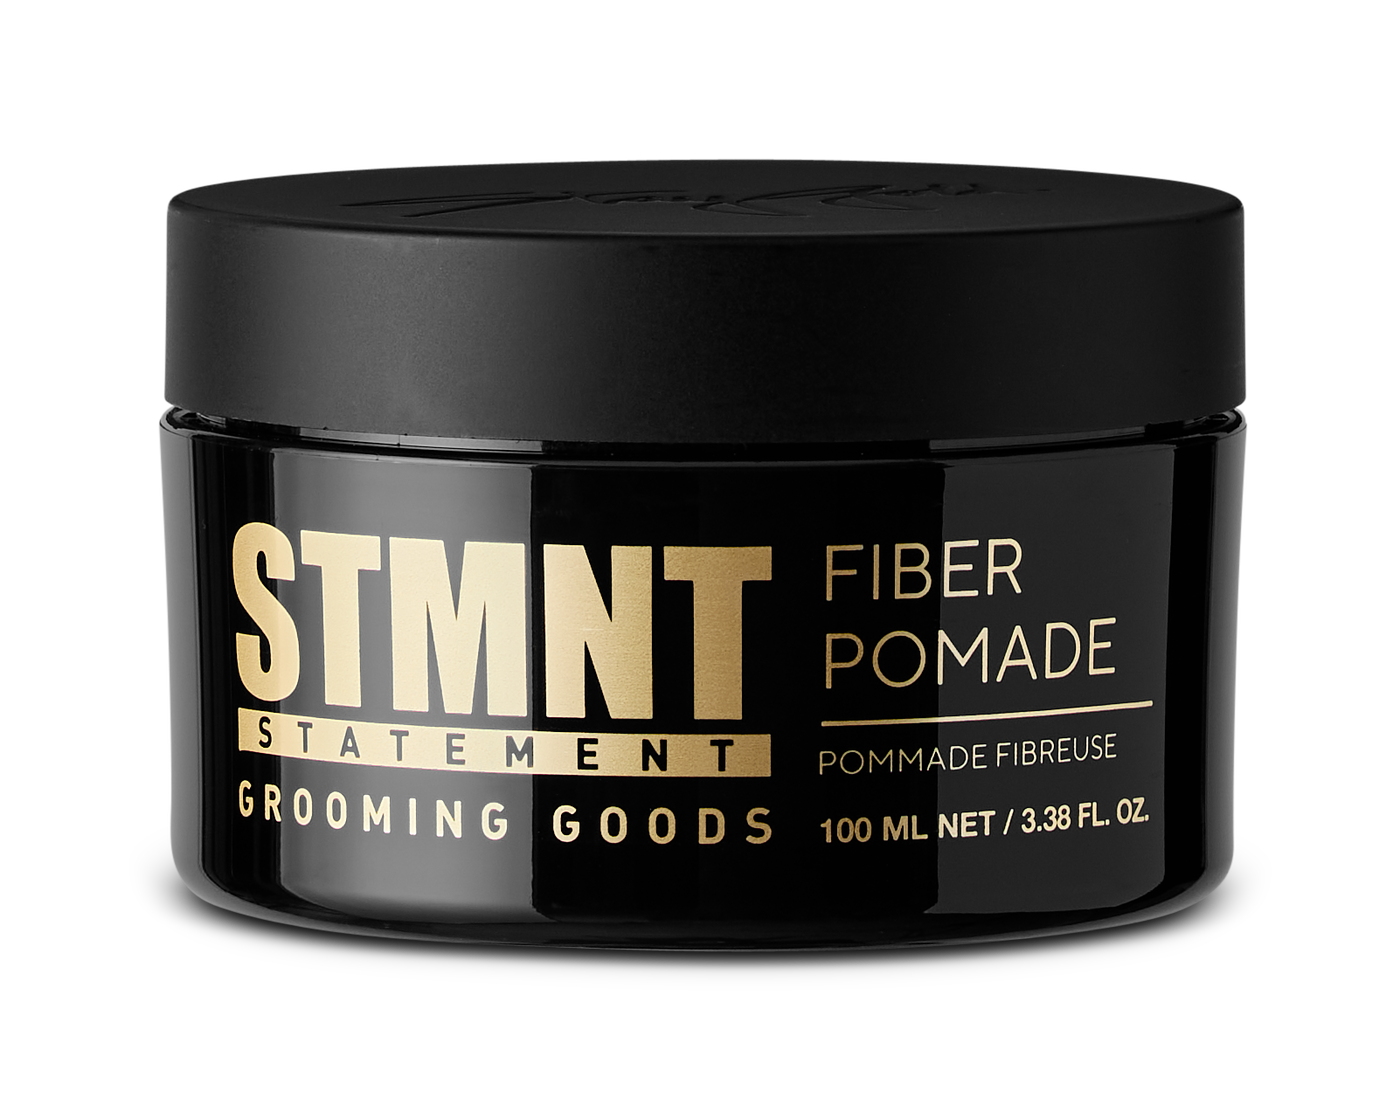 STMNT Grooming Goods Fiber Pomade 100mL - Salon Warehouse